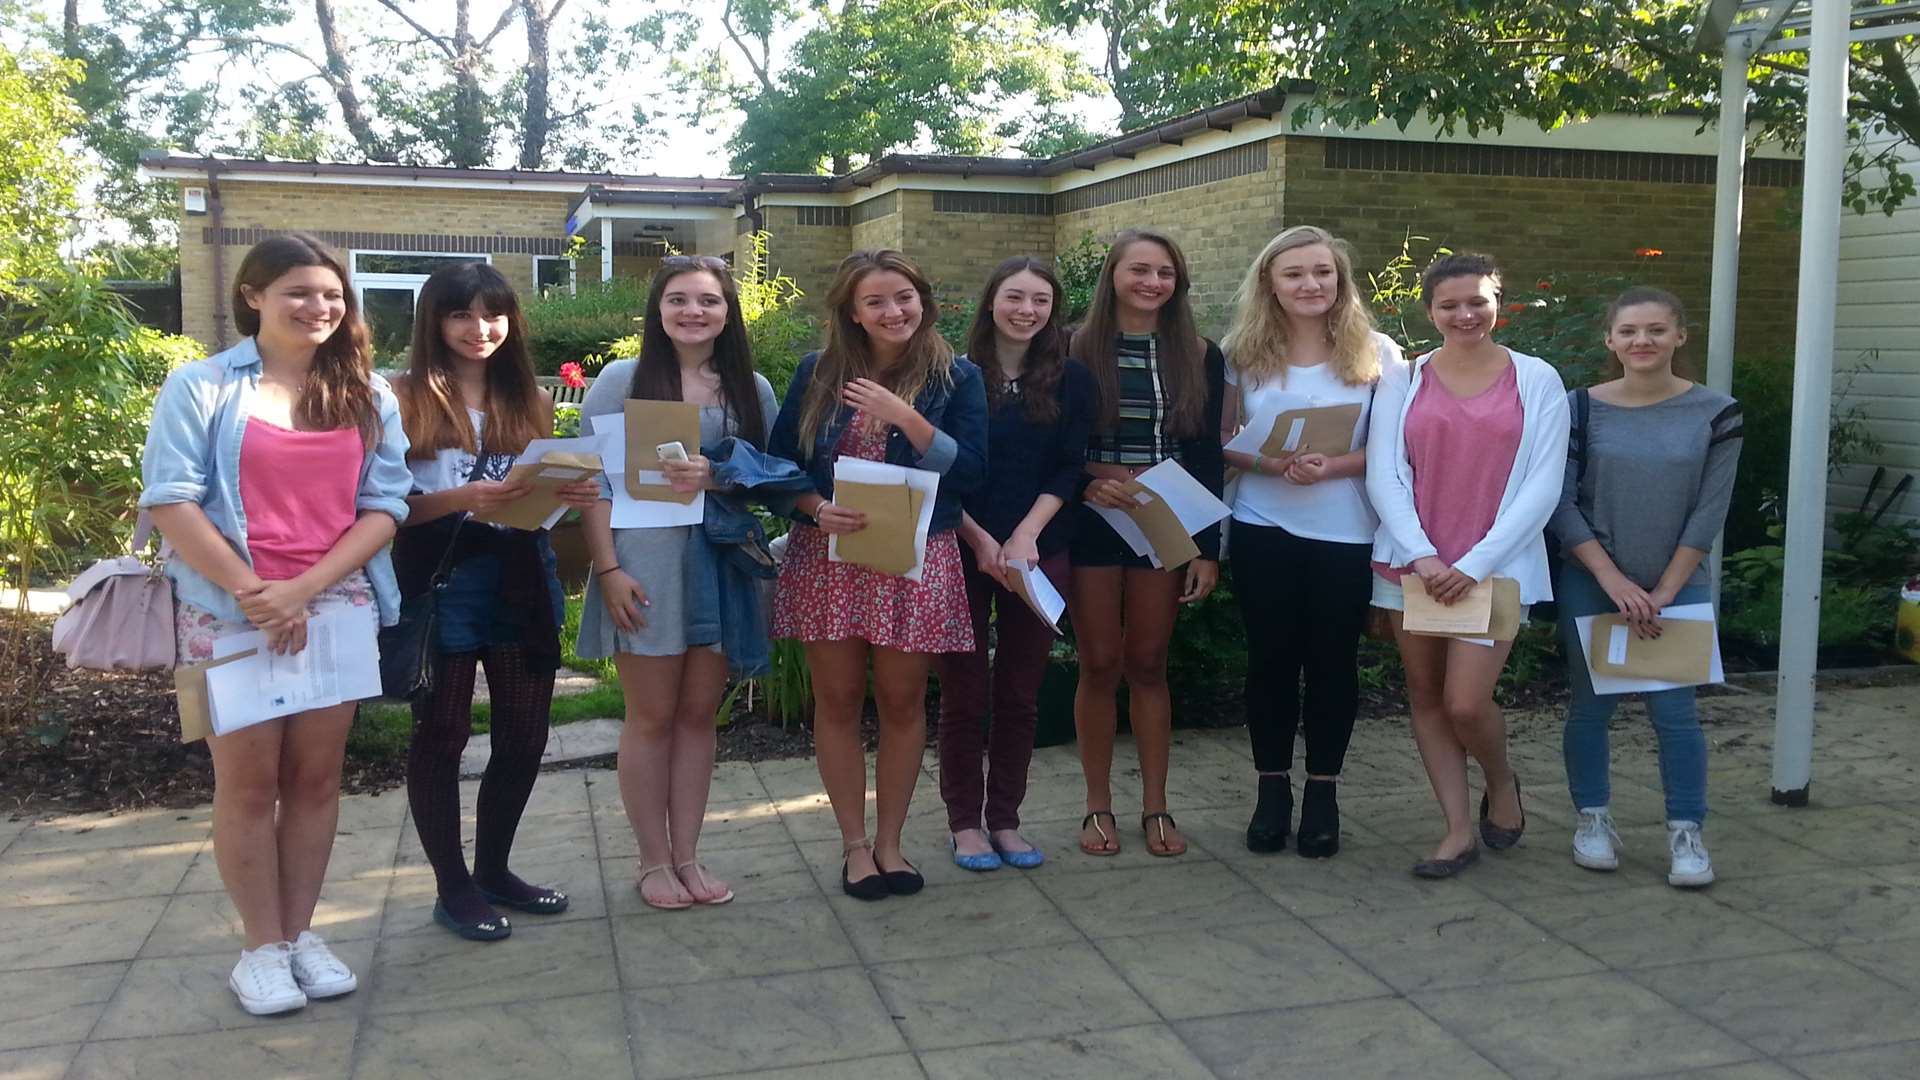 Pupils celebrating their results at Queen Elizabeth's Grammar School in Faversham